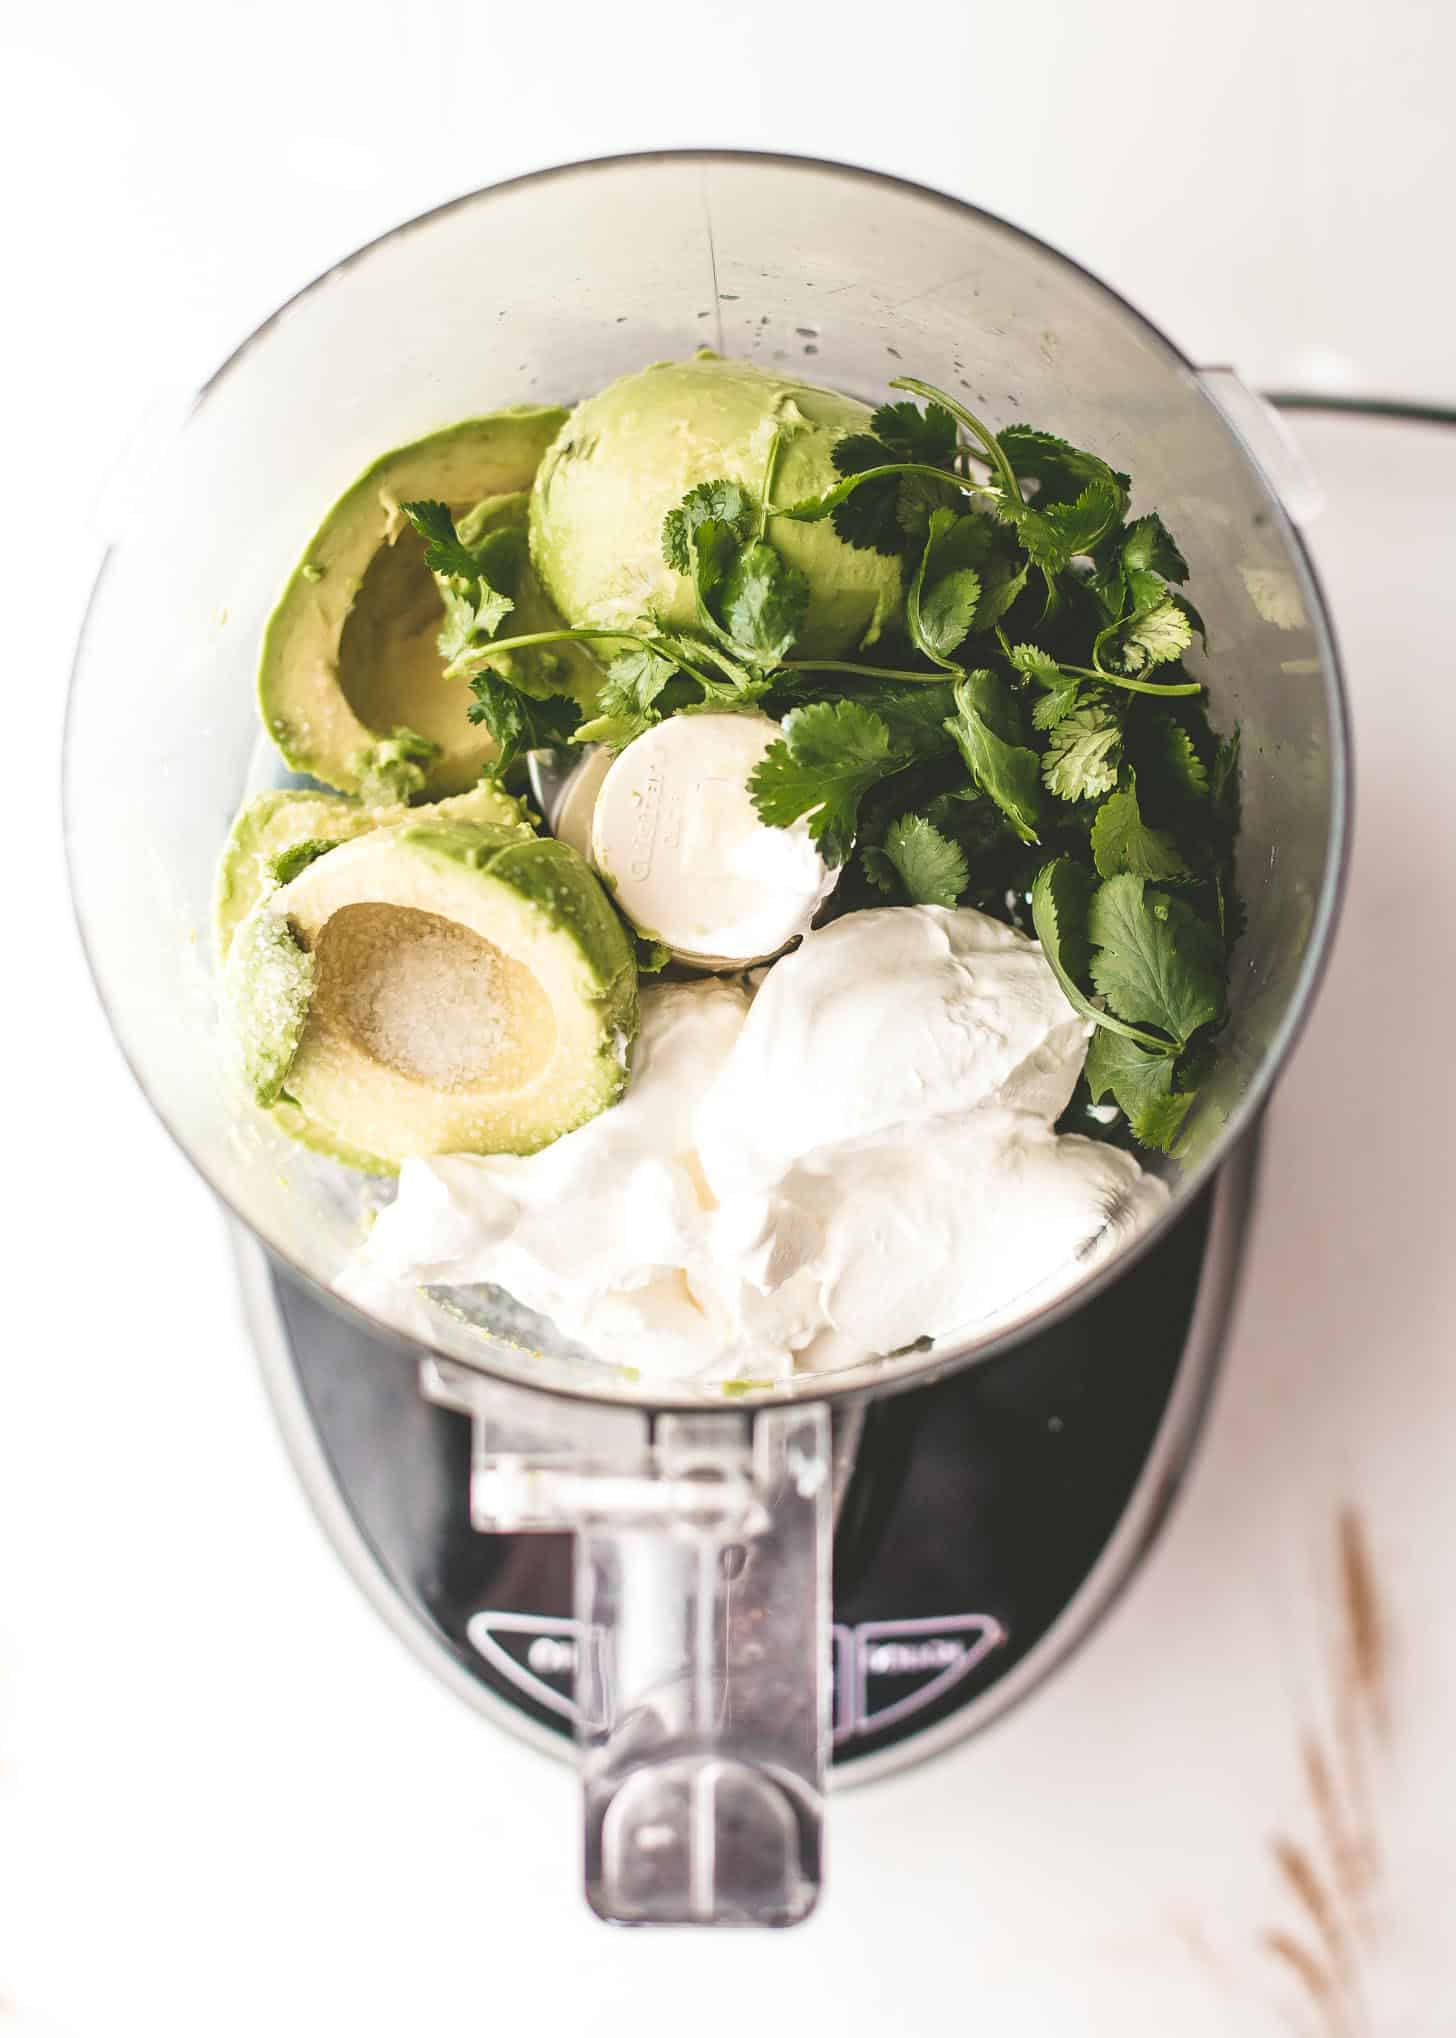 avocado, cilantro, and sour cream in a food processor